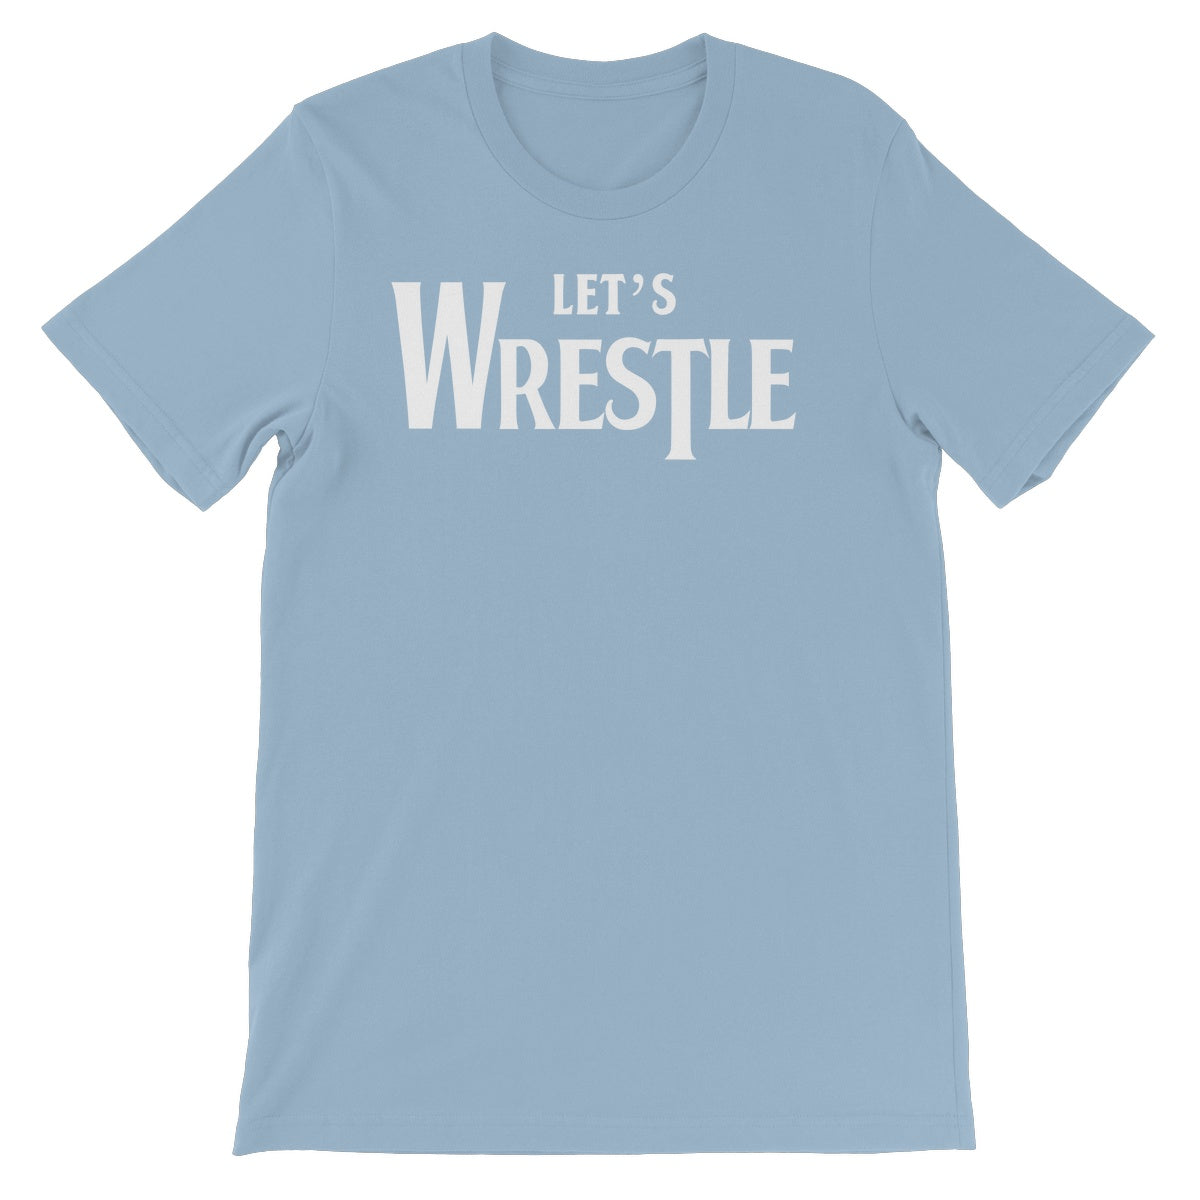 Let's Wrestle Let's Wrestle Unisex Short Sleeve T-Shirt